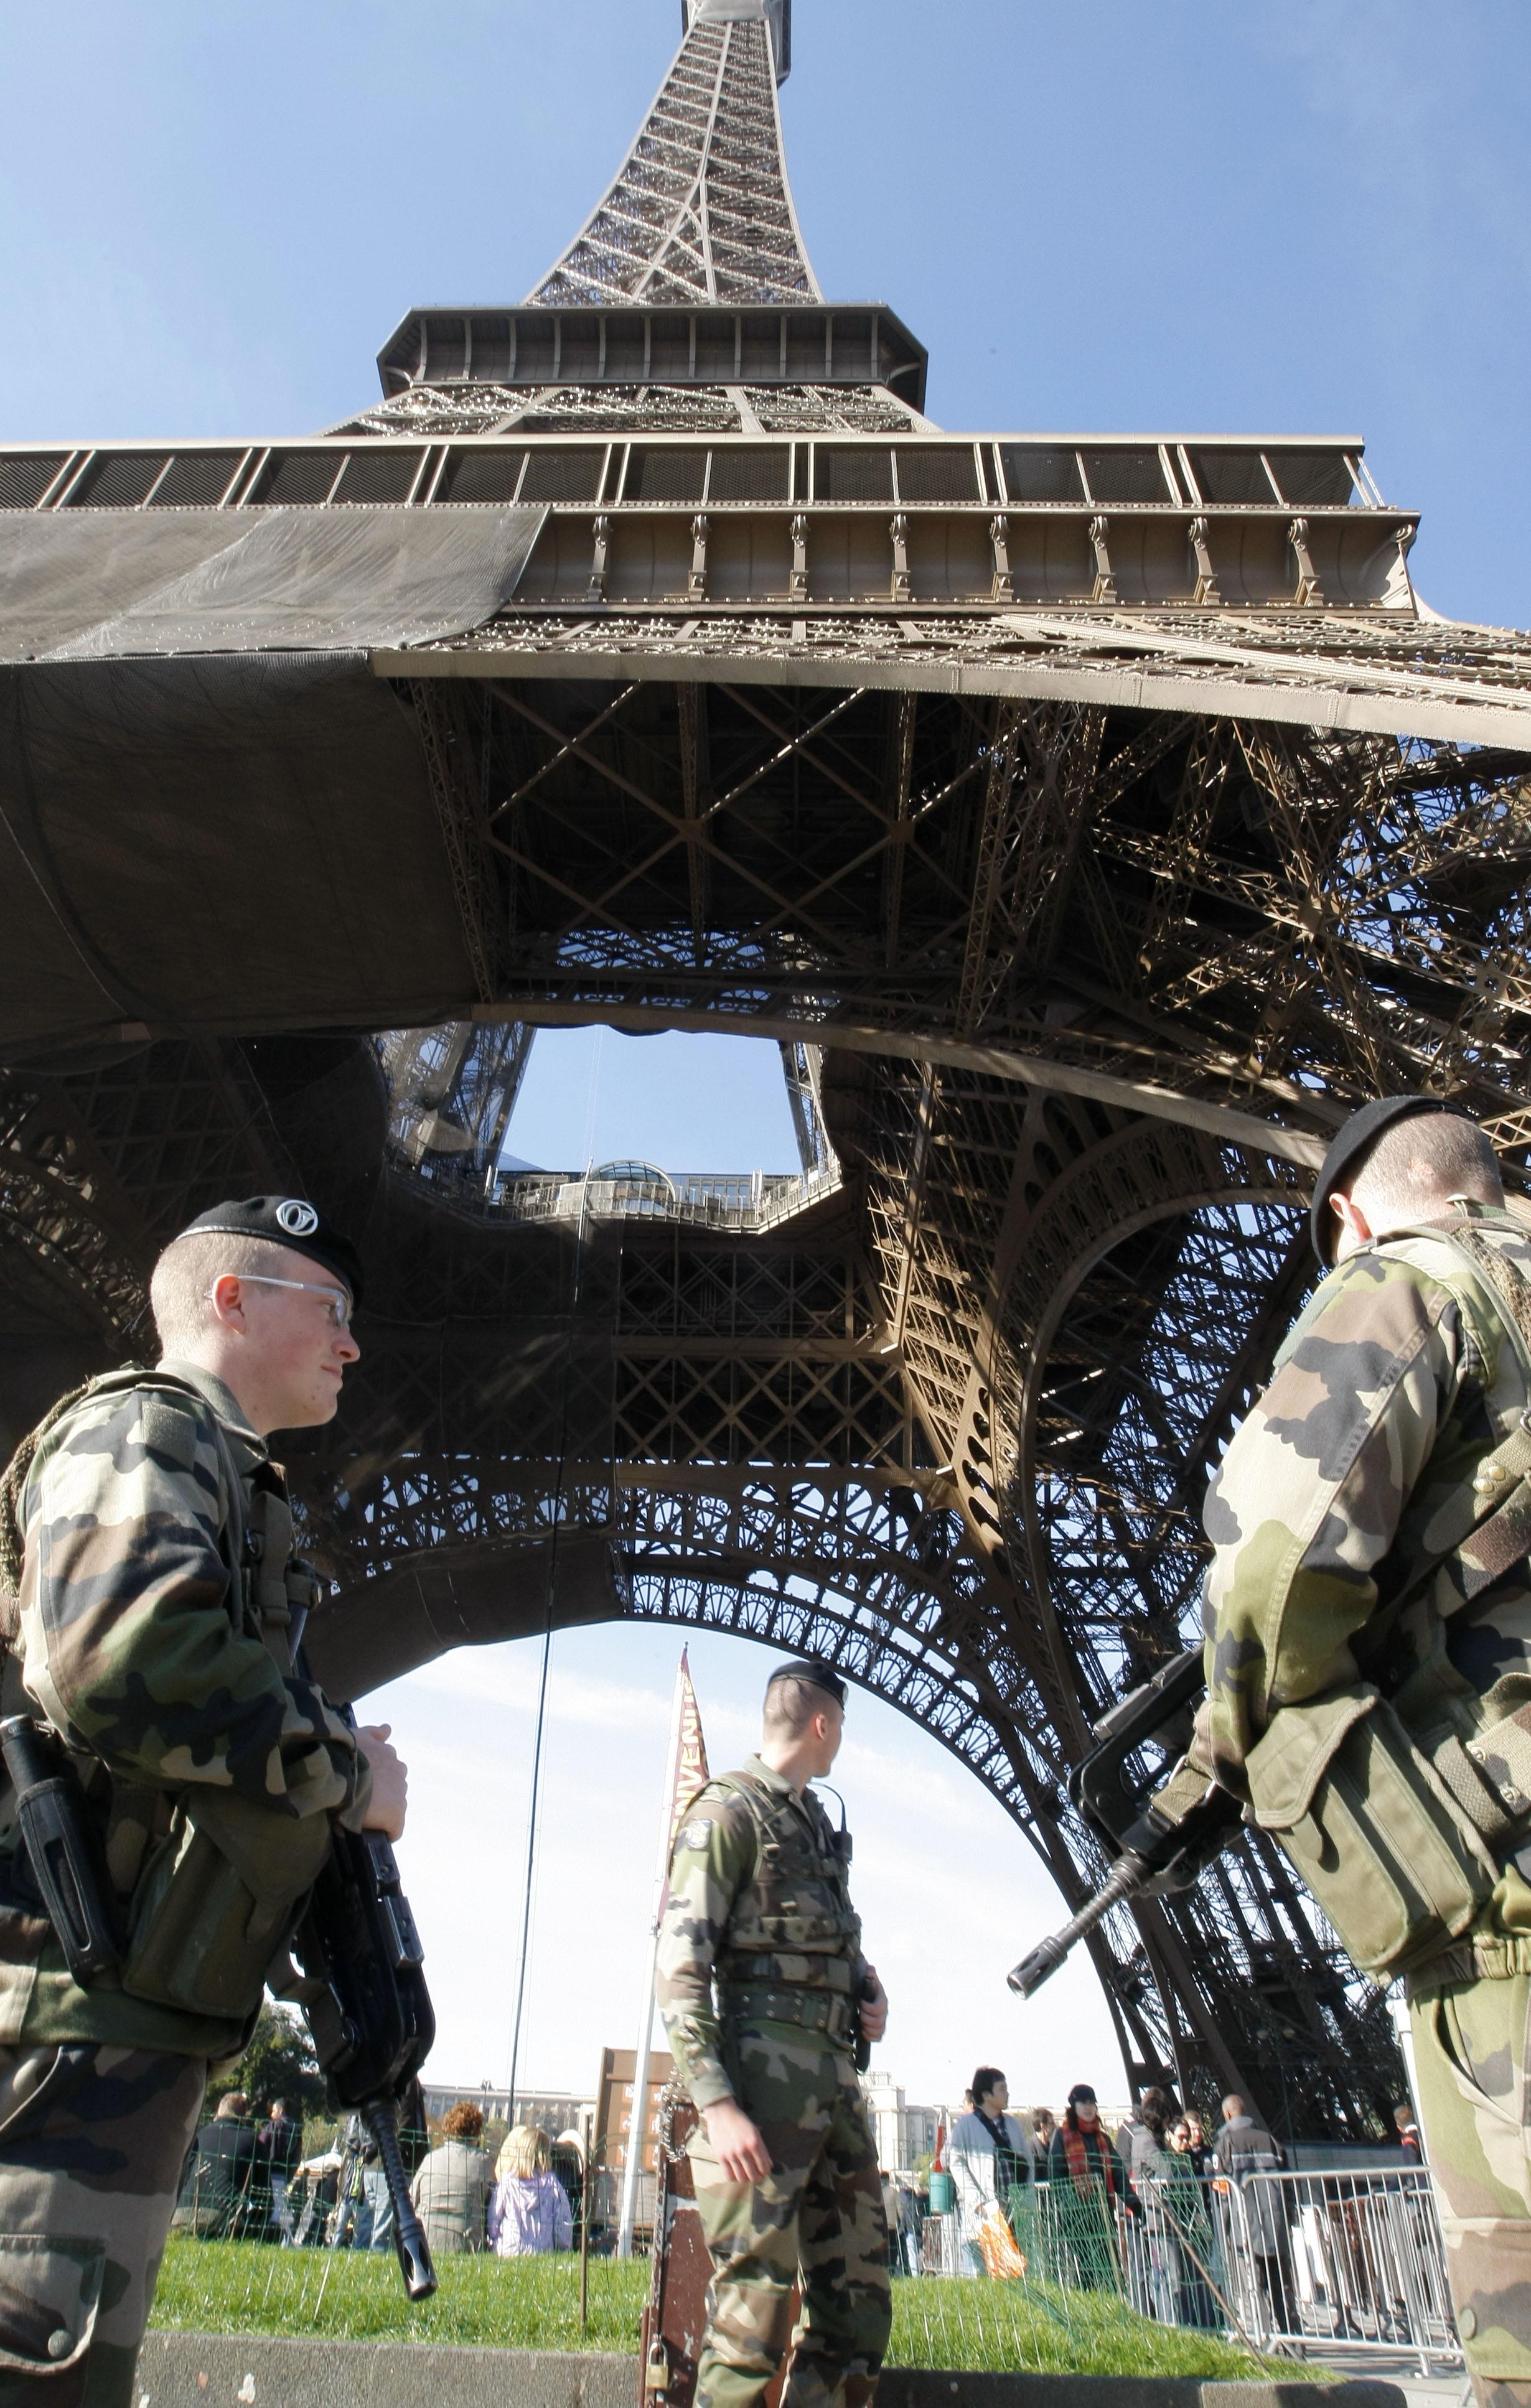 Frankrike, Propaganda, Terrorism, Terrorhot, Saudiarabien, Paris, Terror, Beredskap, al-Qaida